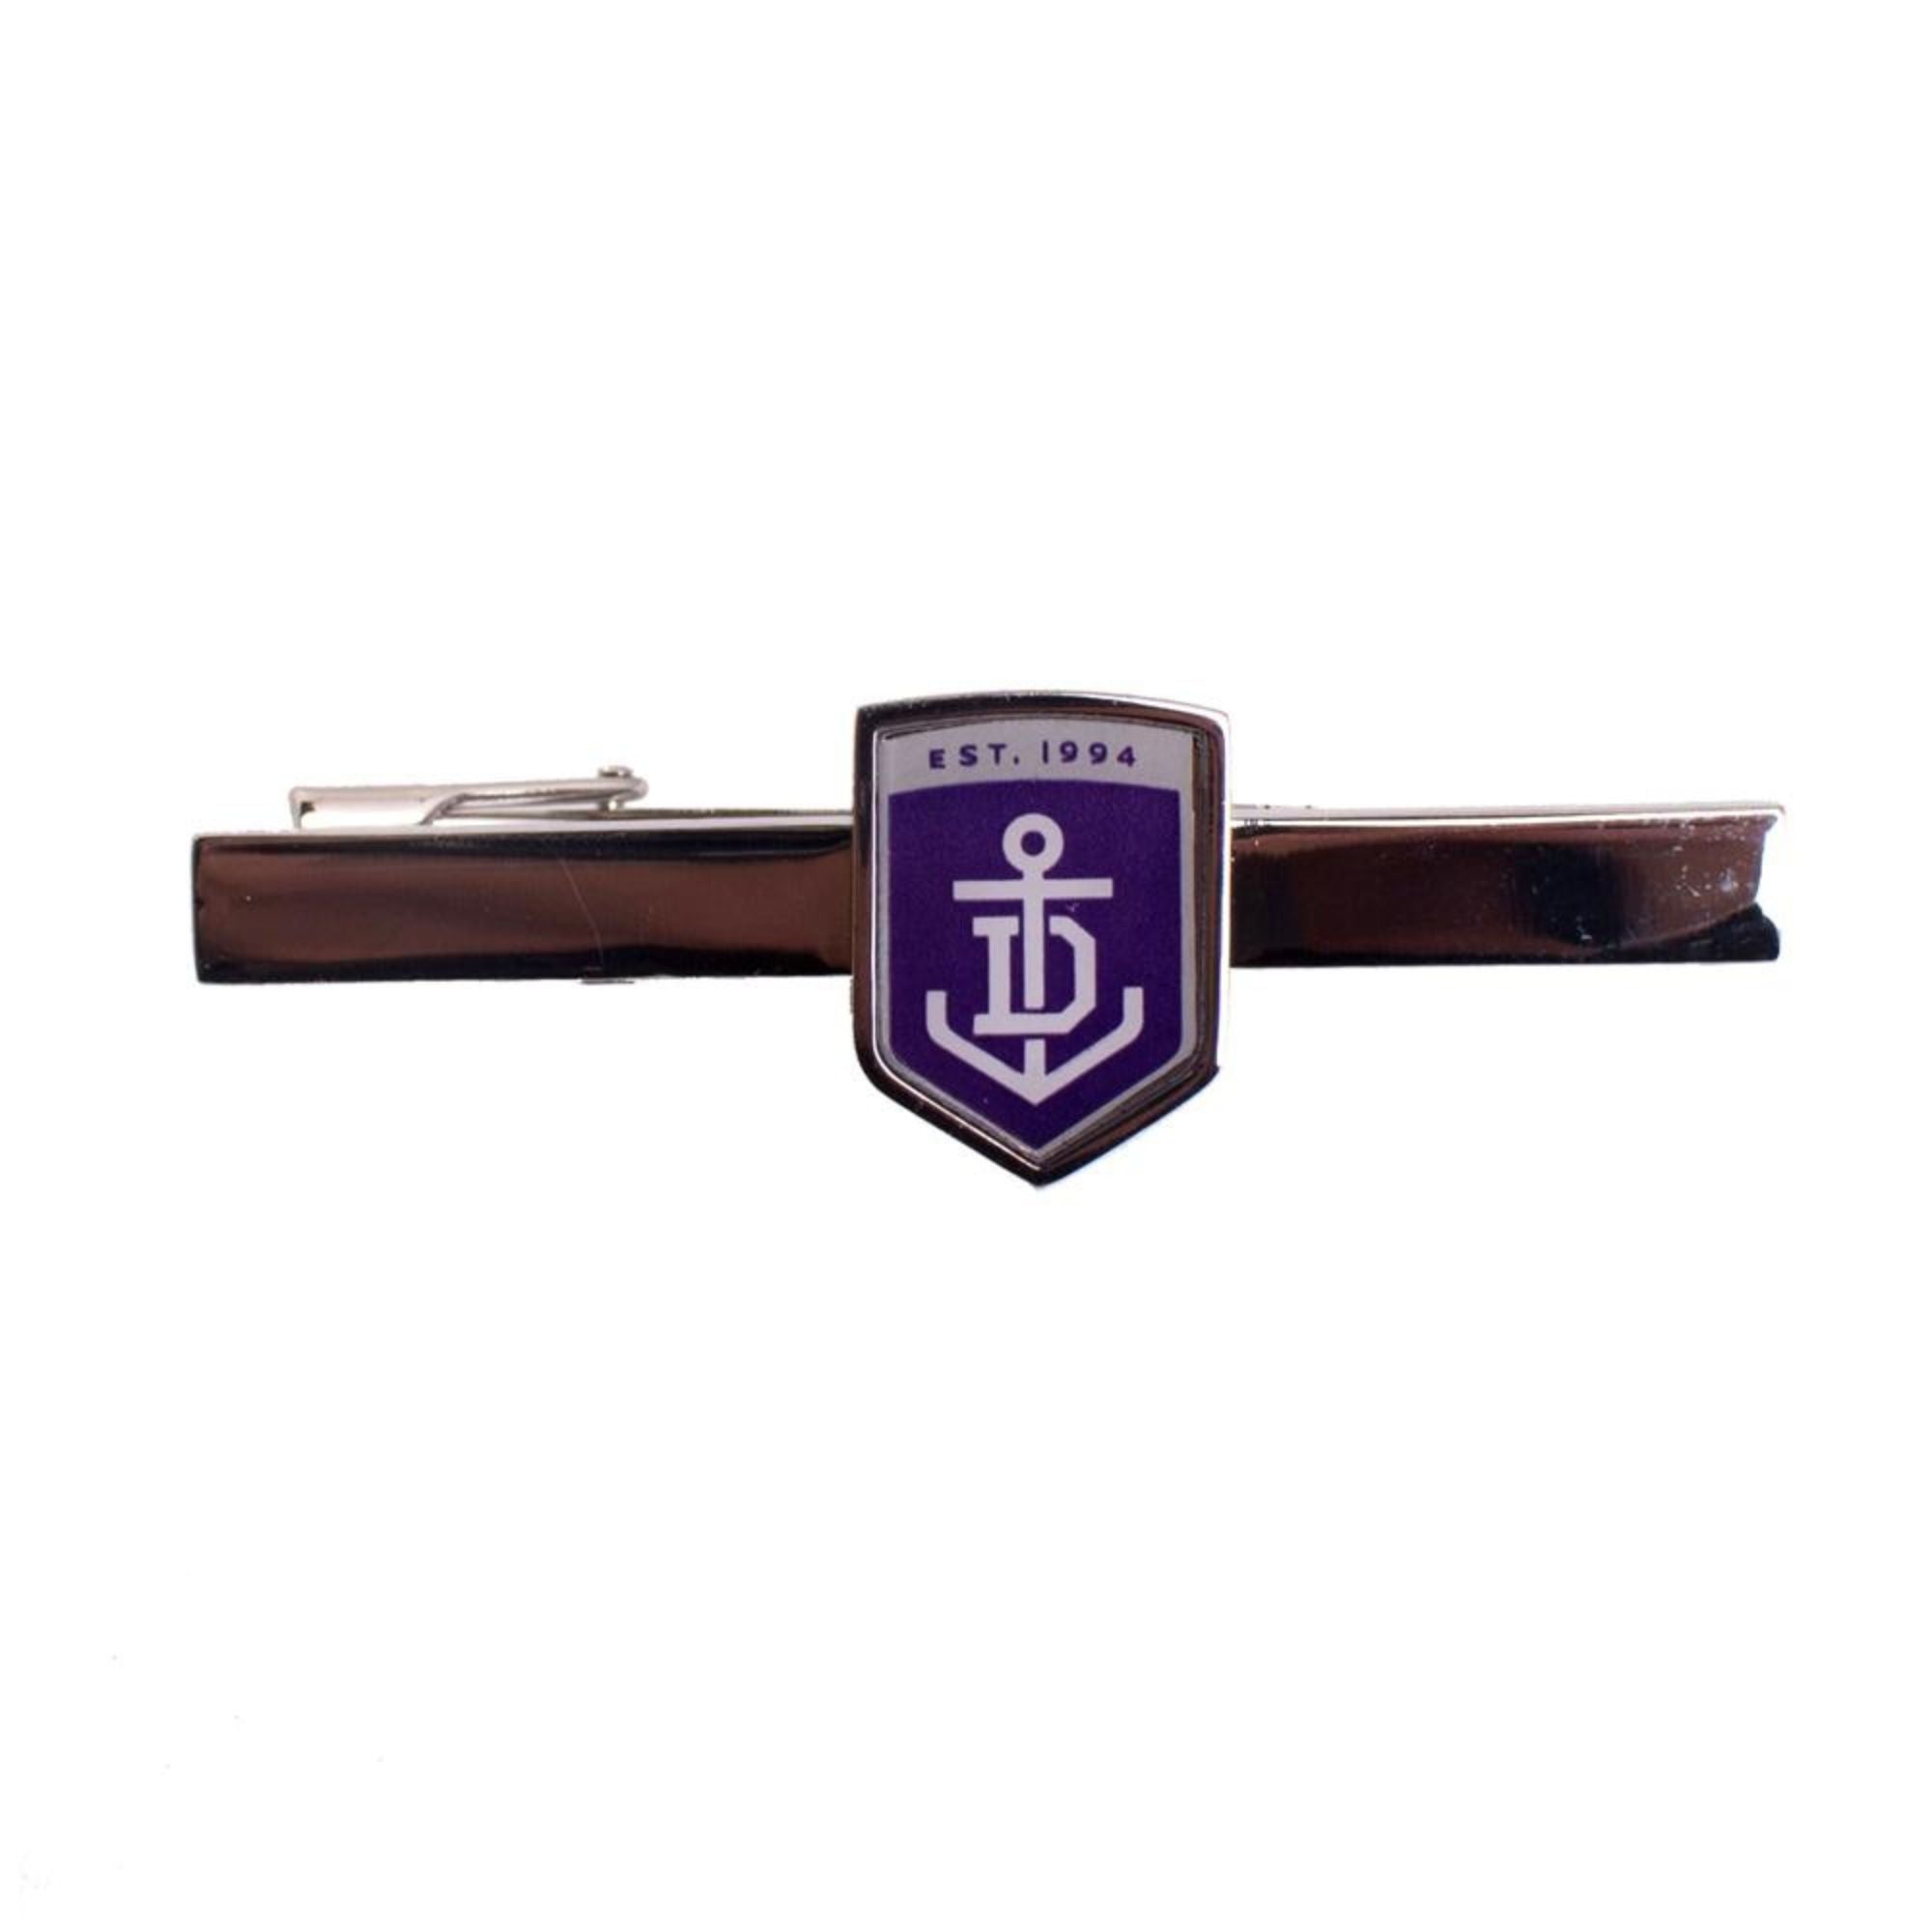 Fremantle Afl Tie Bar Shield